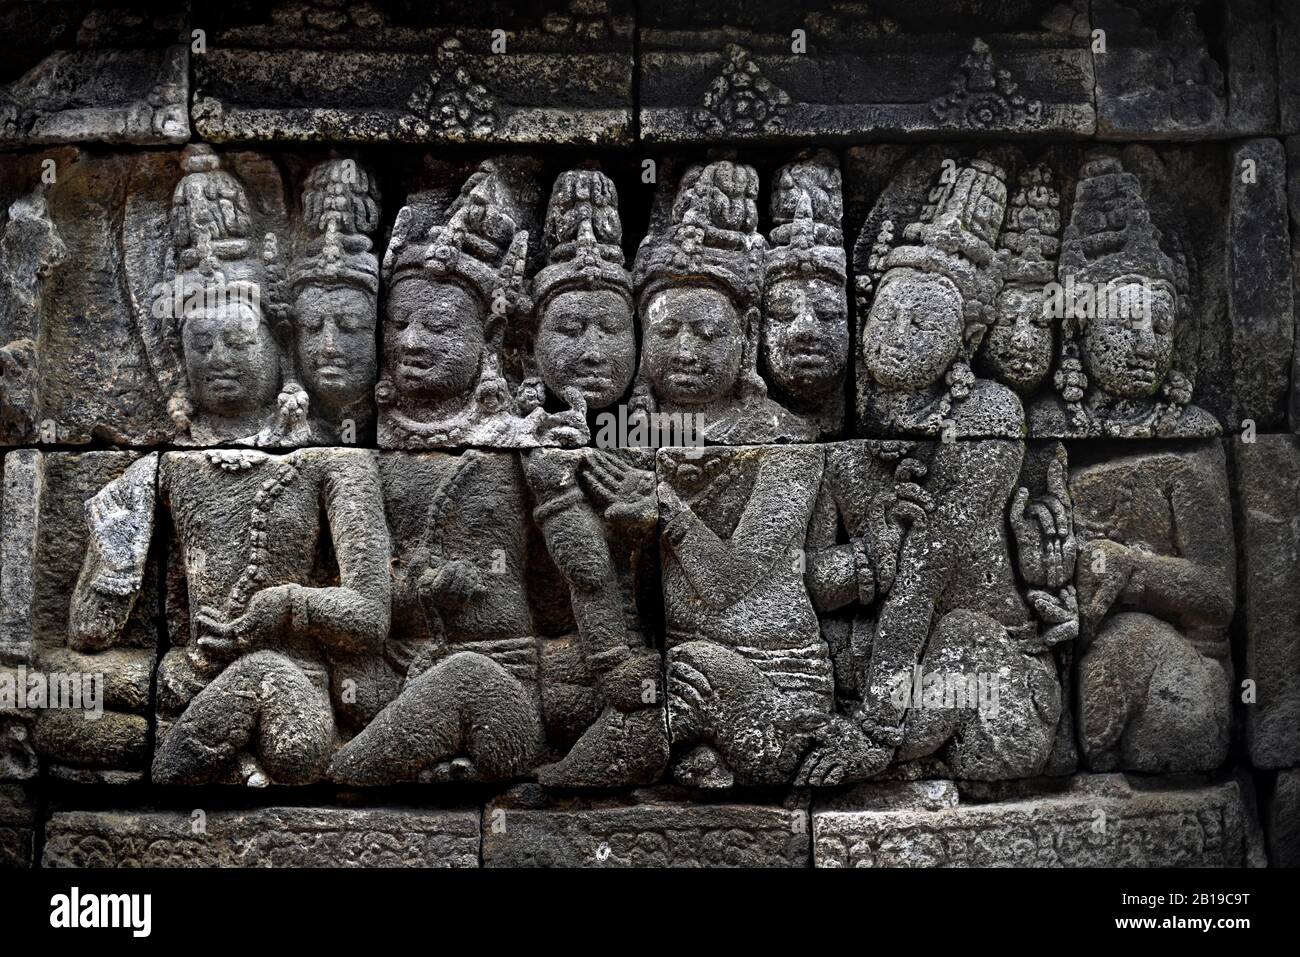 Eine der Tausenden von Relieftafeln im Borobudur Tempel, Zentraljava, Indonesien. Stockfoto